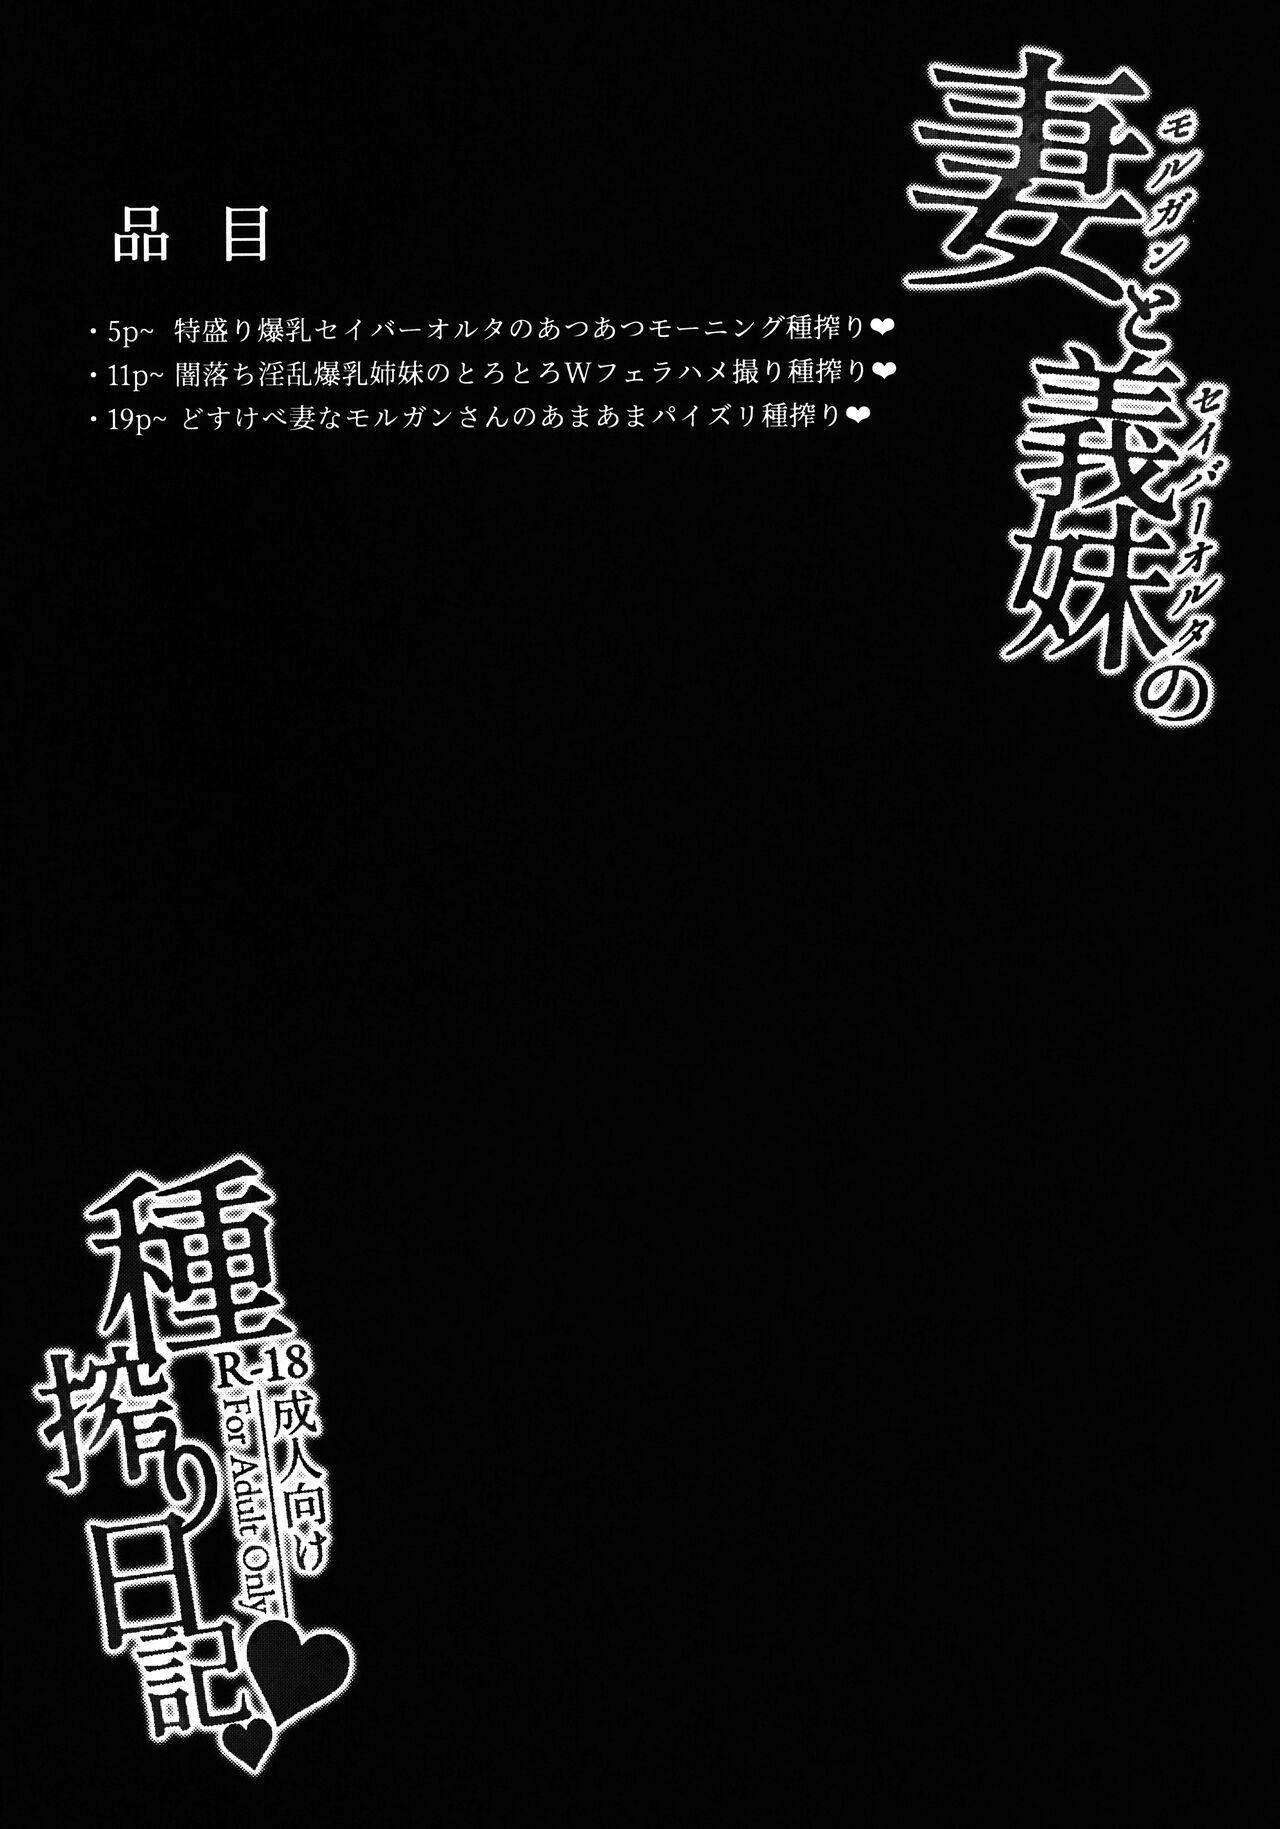 Cfnm Morgan to Saber Alter no Tane Shibori Nikki + Omake - Fate grand order Double - Picture 3